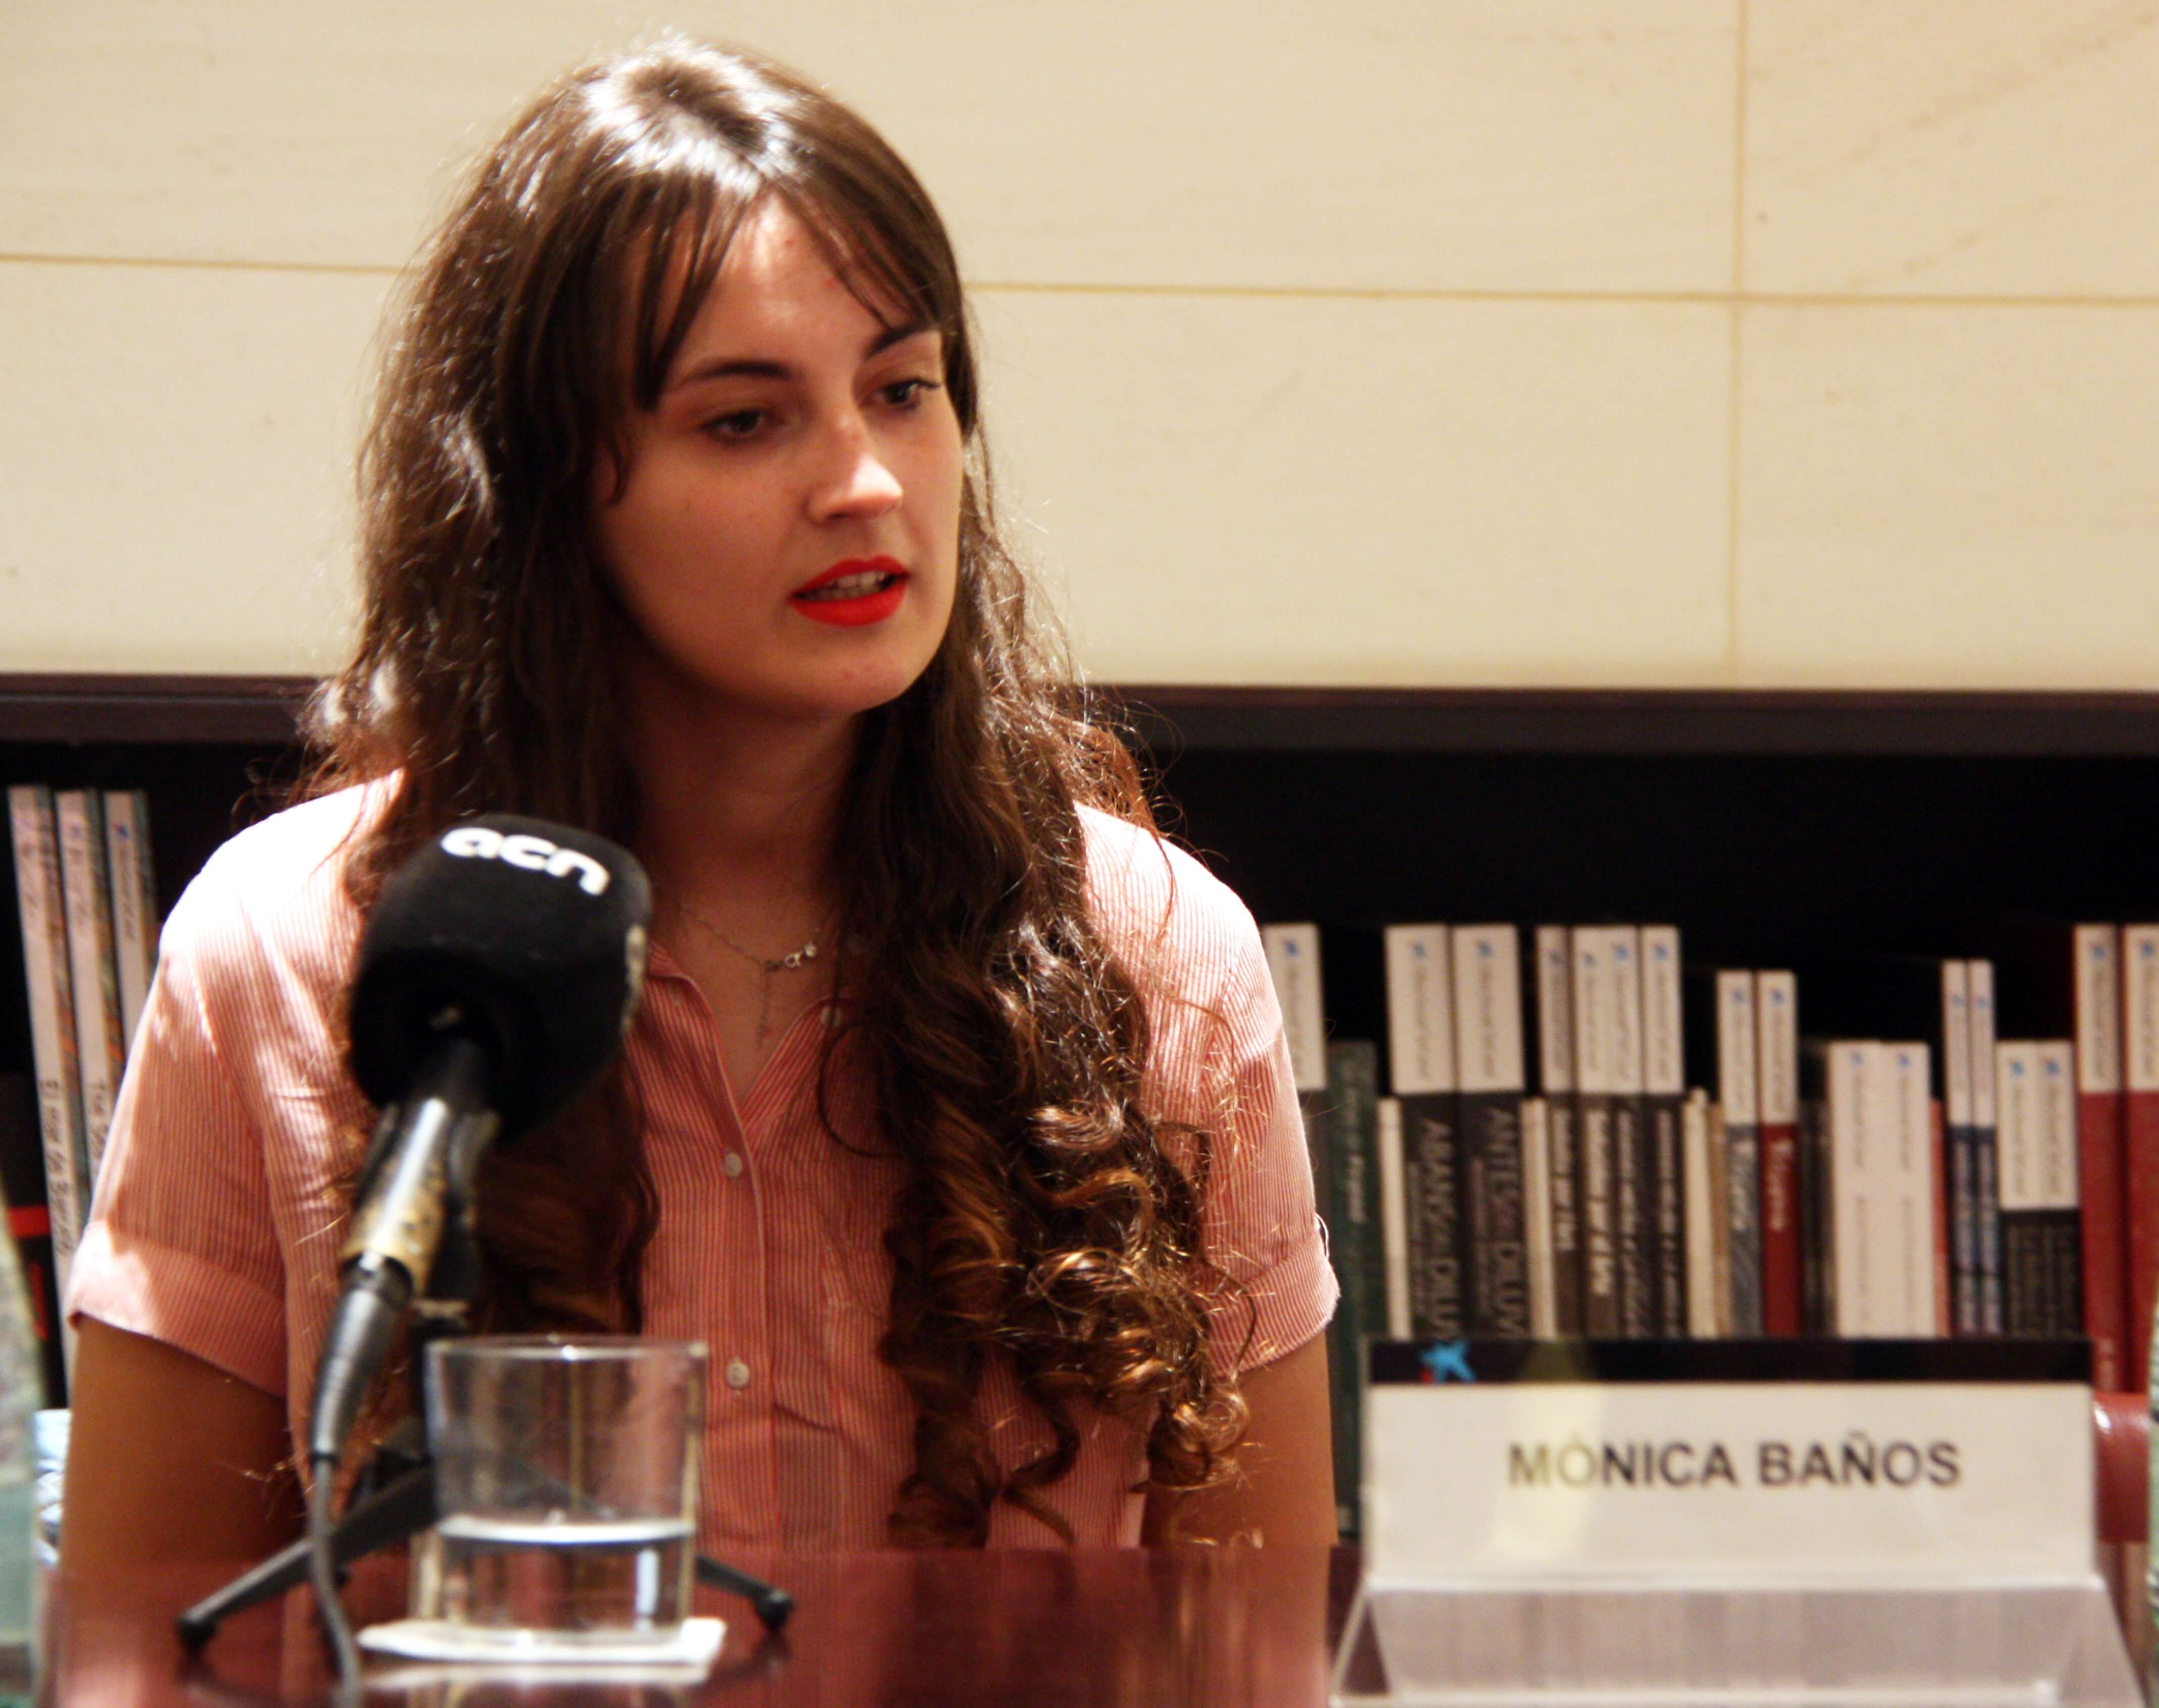 Mónica Baños guanya la sisena edició del Premi Literari La Caixa / Plataforma de novel·la juvenil